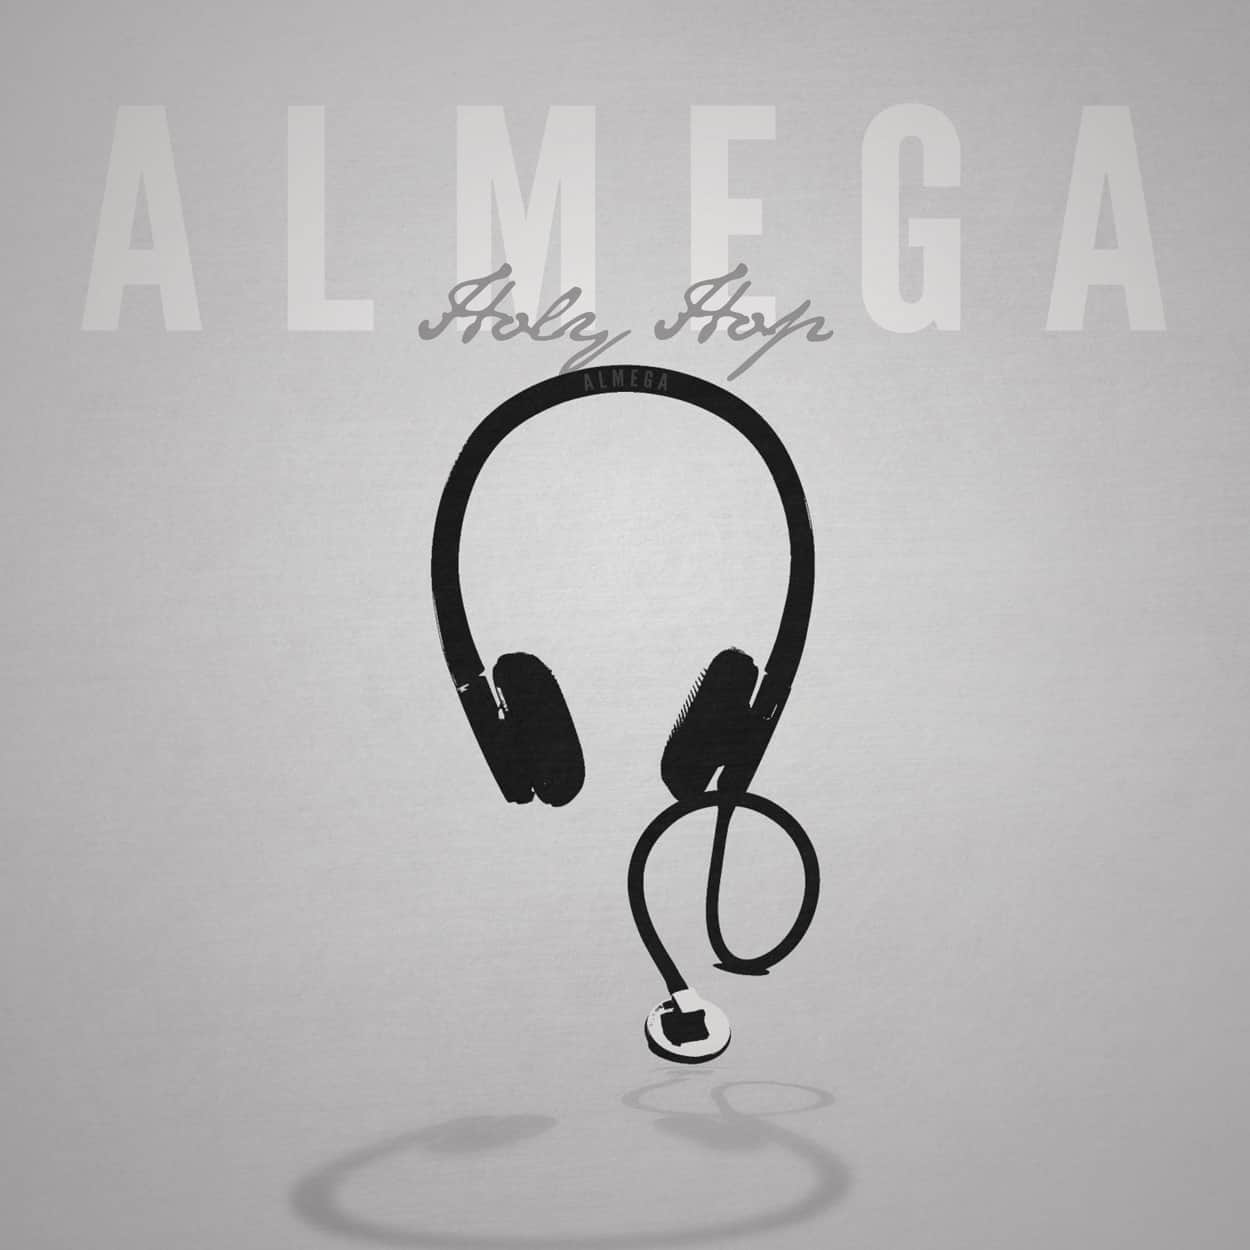 almega - album art design